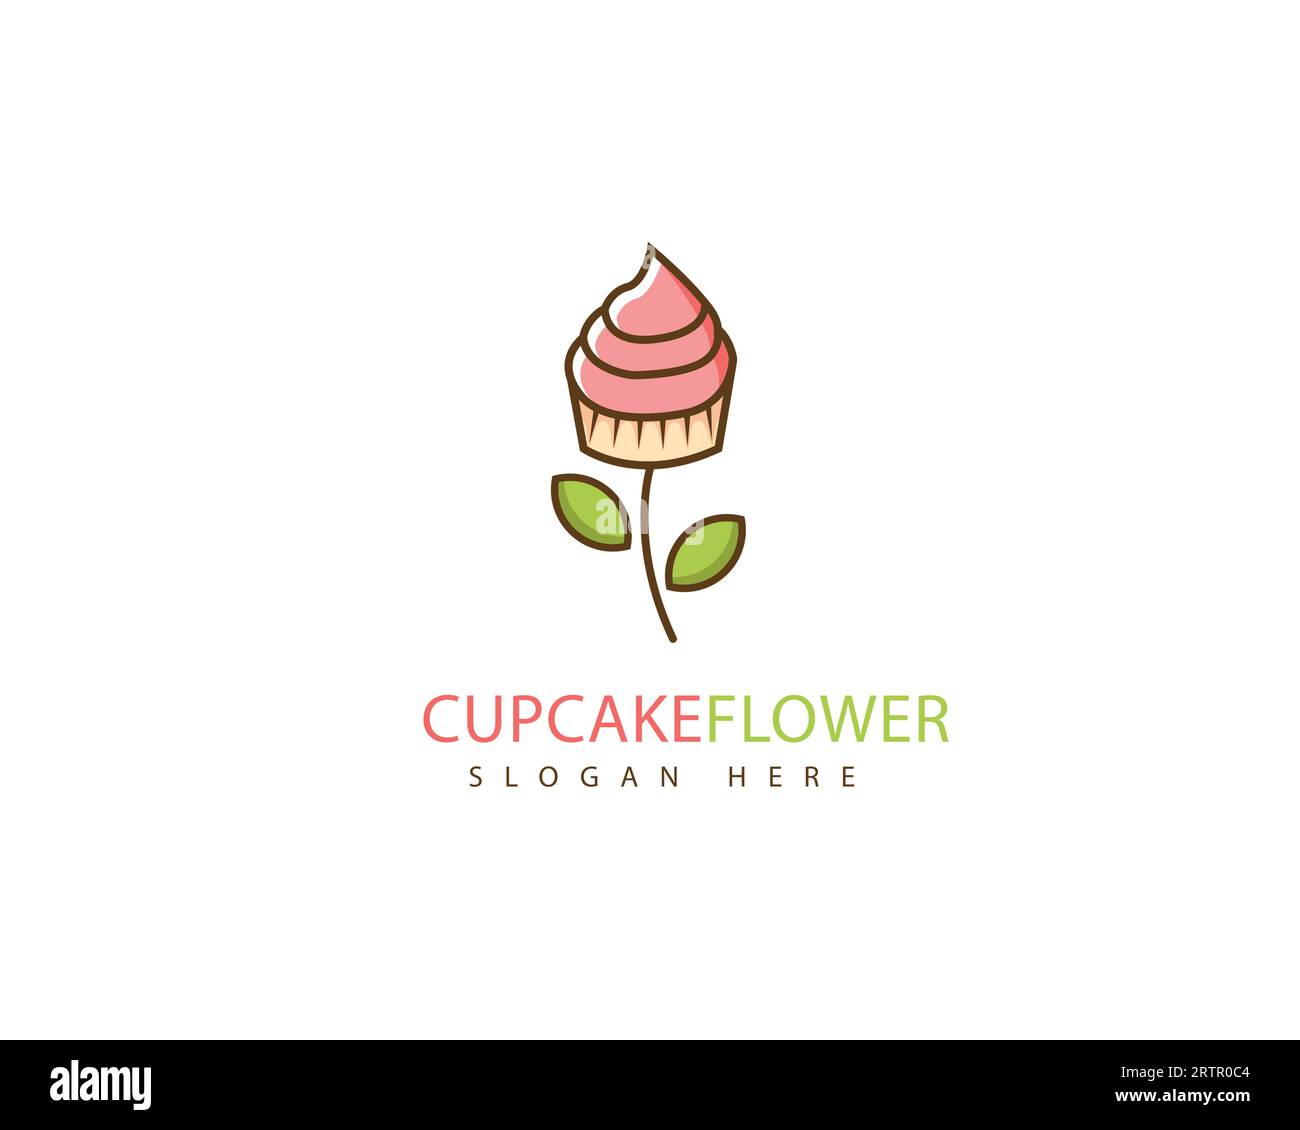 Disegno illustrativo dell'icona vettoriale del logo cupcake Flower. Logo del gelato. Cupcake Flower Creative Design Illustrazione Vettoriale